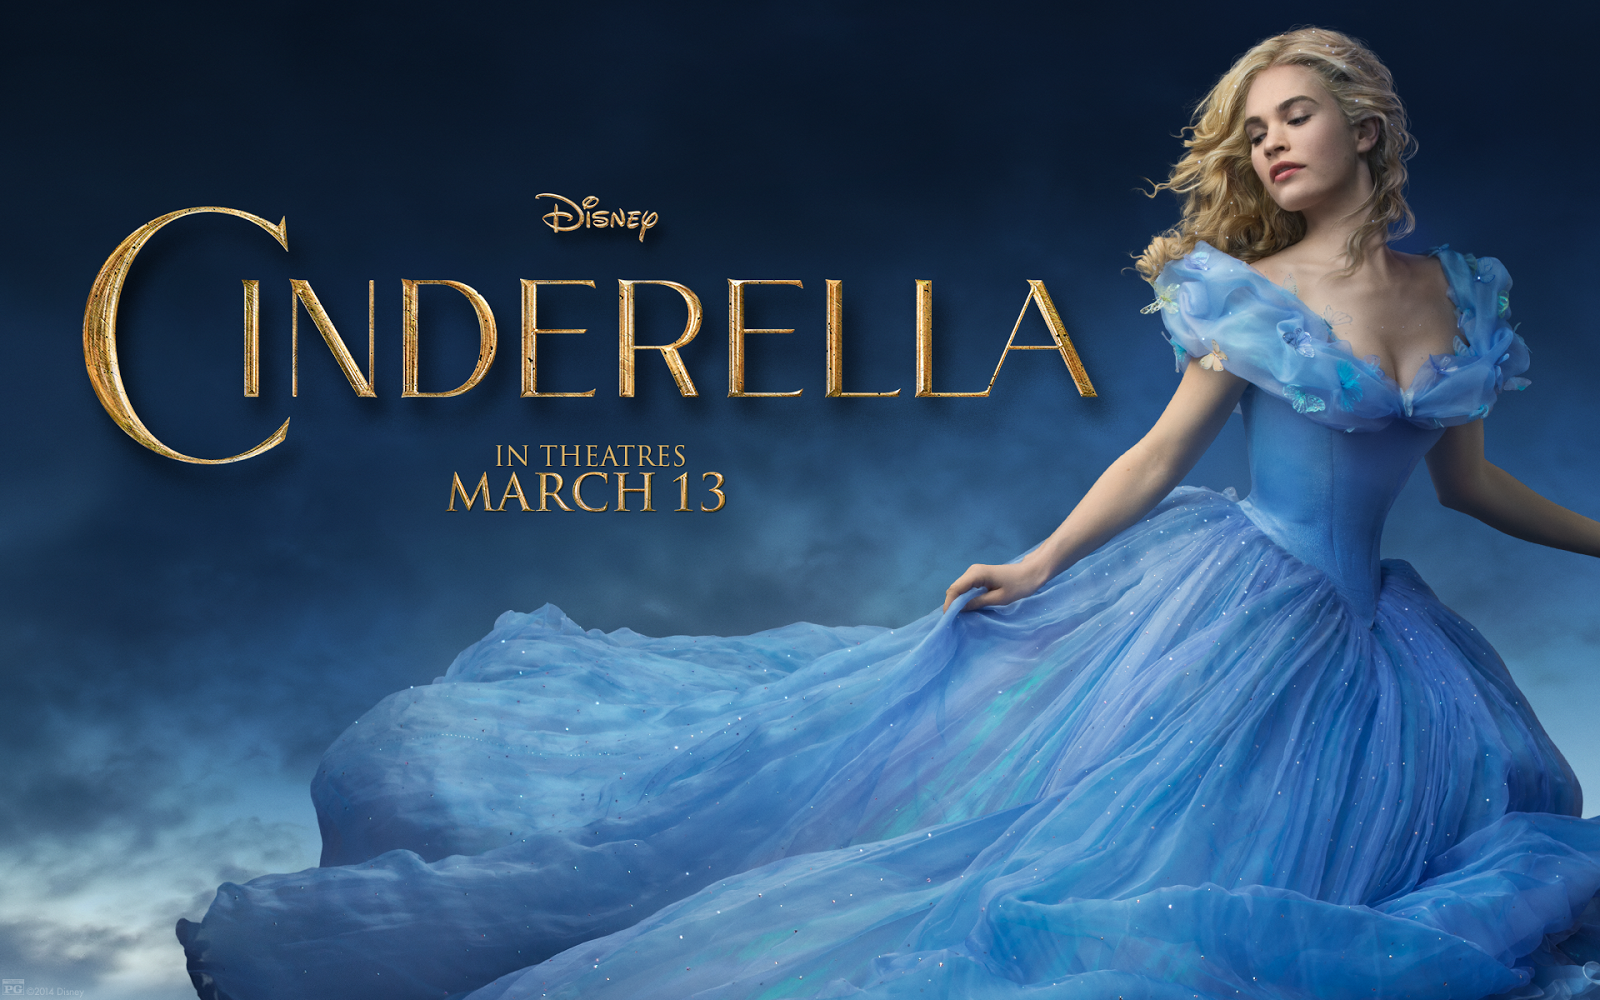 WATCH FULL MOVIE FREE: Cinderella watch full movies online ...